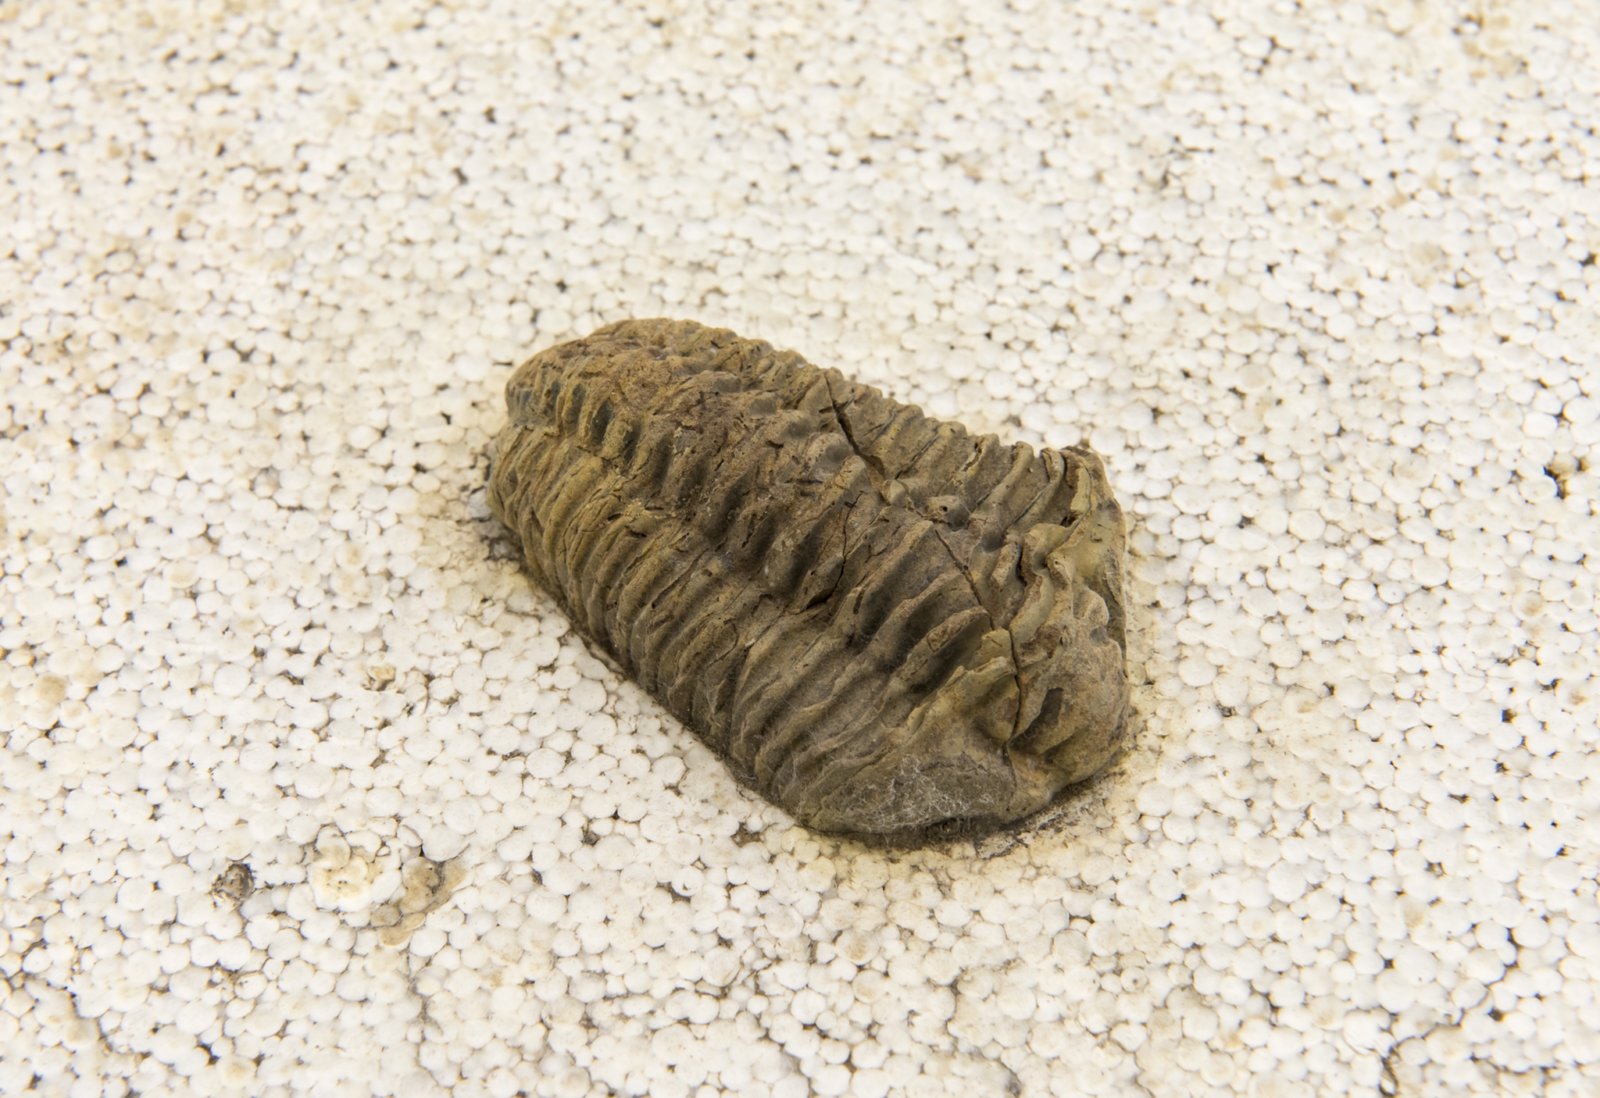 Ashes Withyman, Naturgemälde (detail), 2017, brachiopod, trilobite, zipper clam, styrofoam, 8 x 28 x 48 in. (20 x 72 x 122 cm)